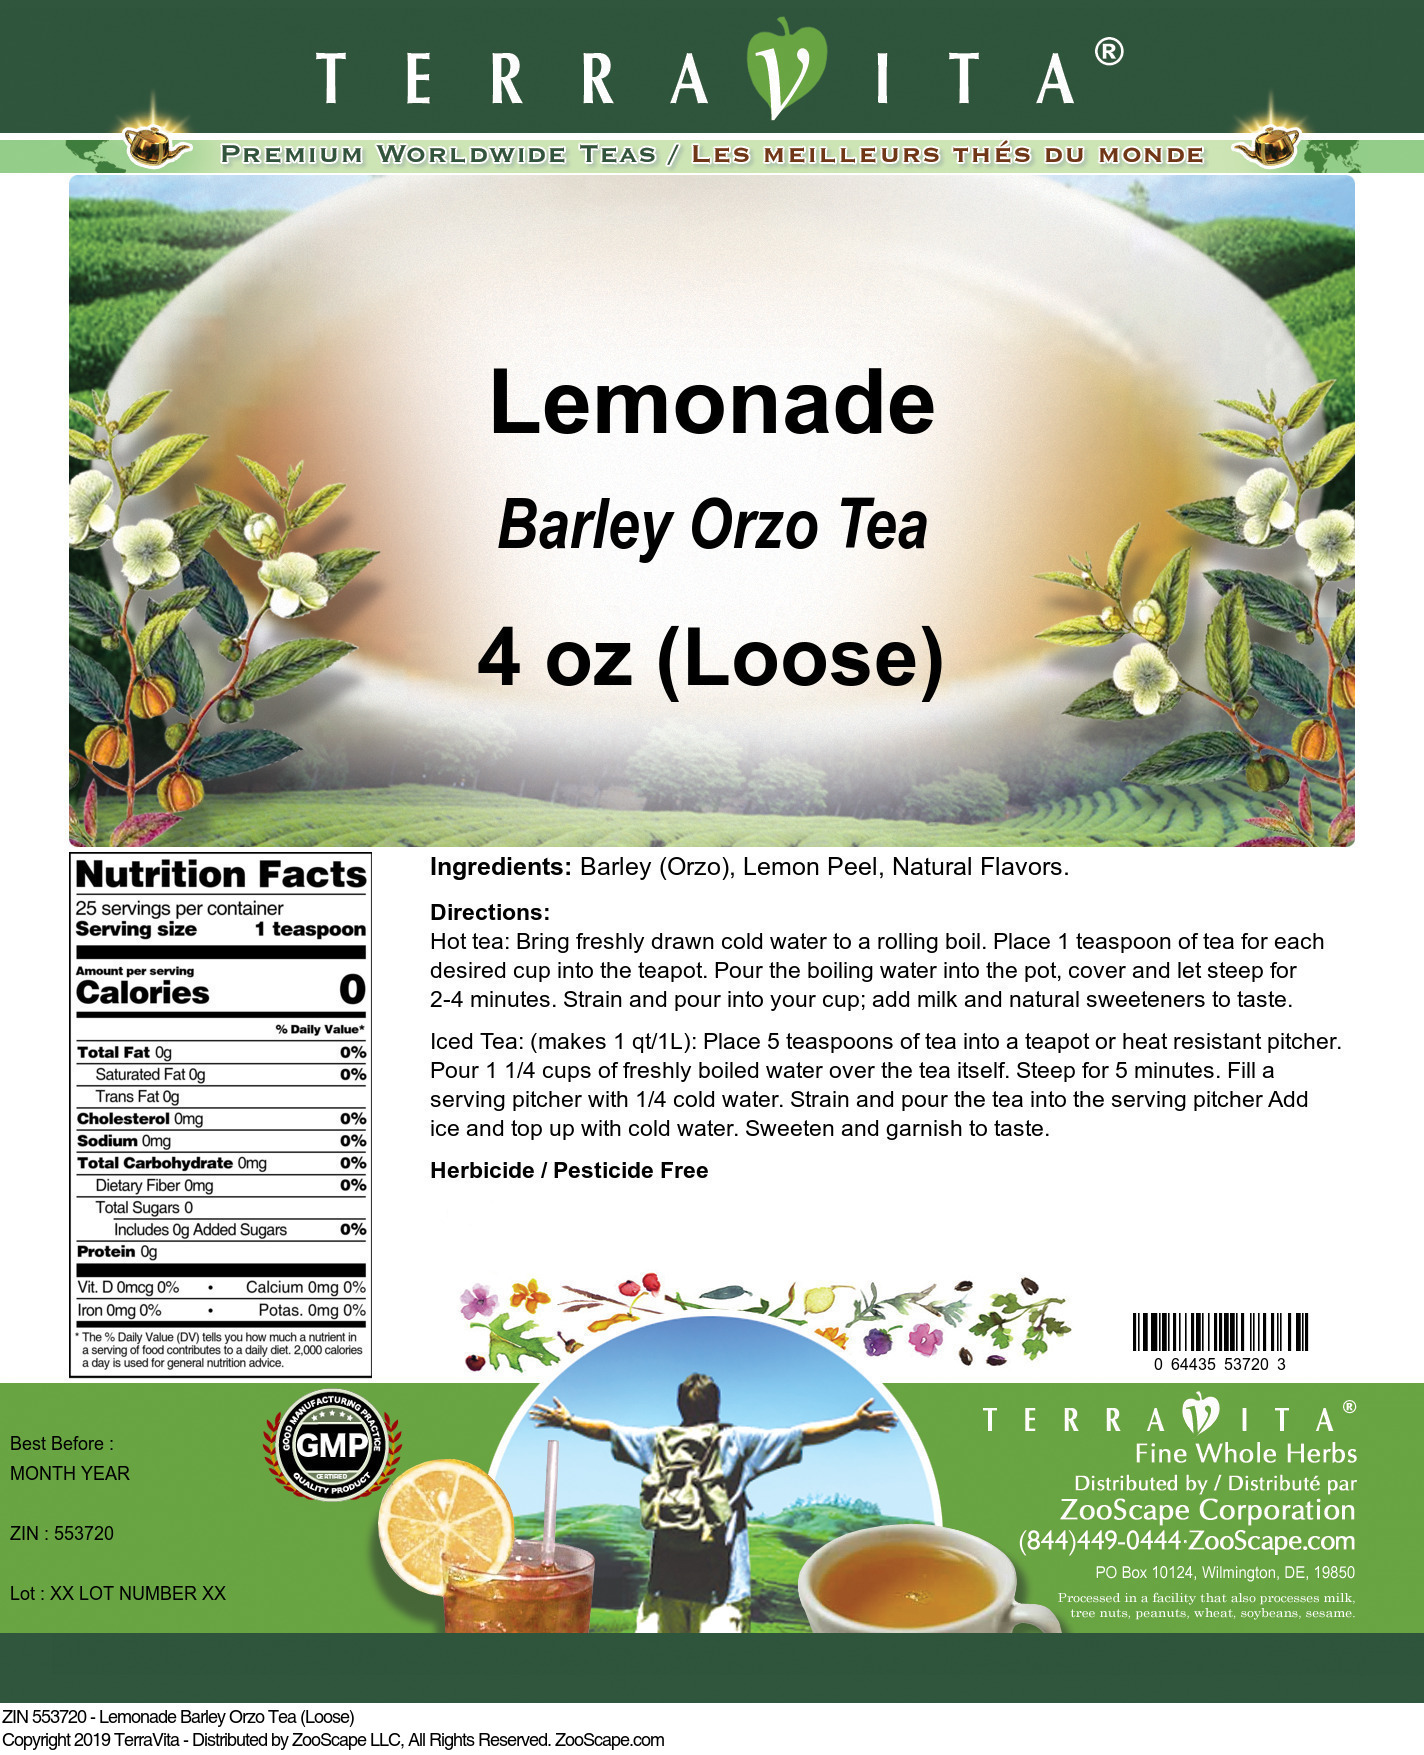 Lemonade Barley Orzo Tea (Loose) - Label